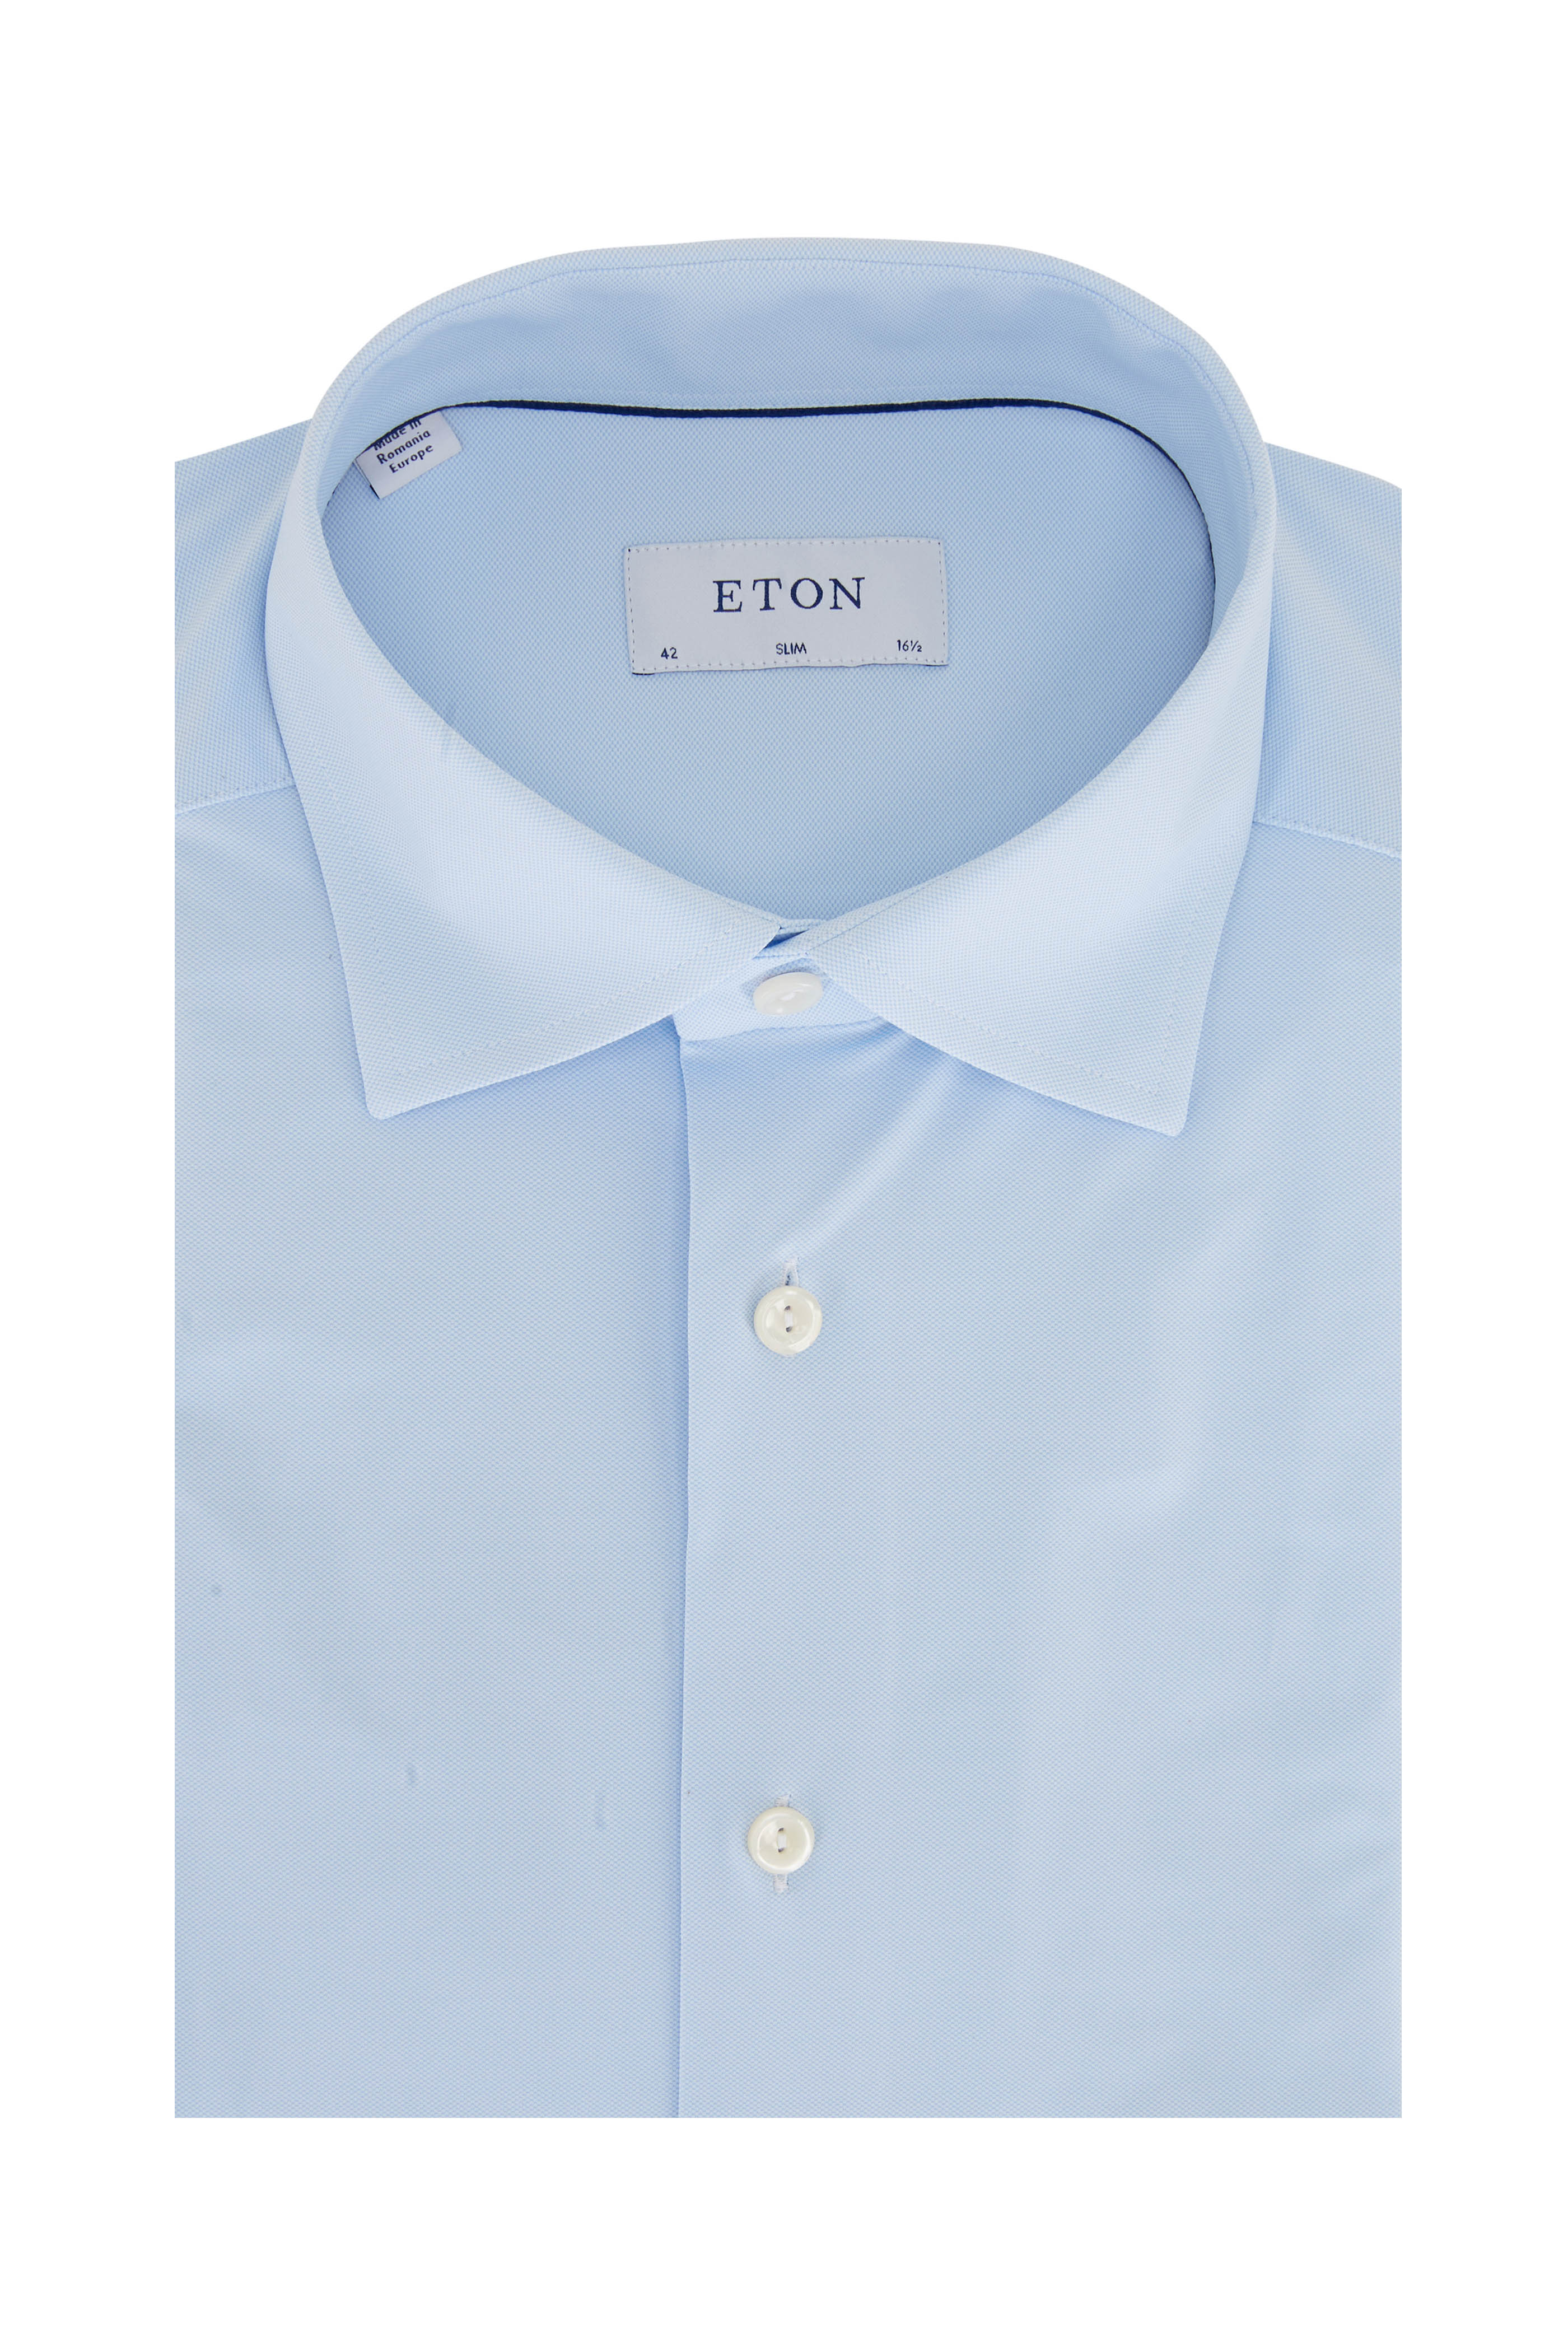 teleurstellen Instituut wijsheid Eton - Royal Blue & White Stripe Dress Shirt | Mitchell Stores